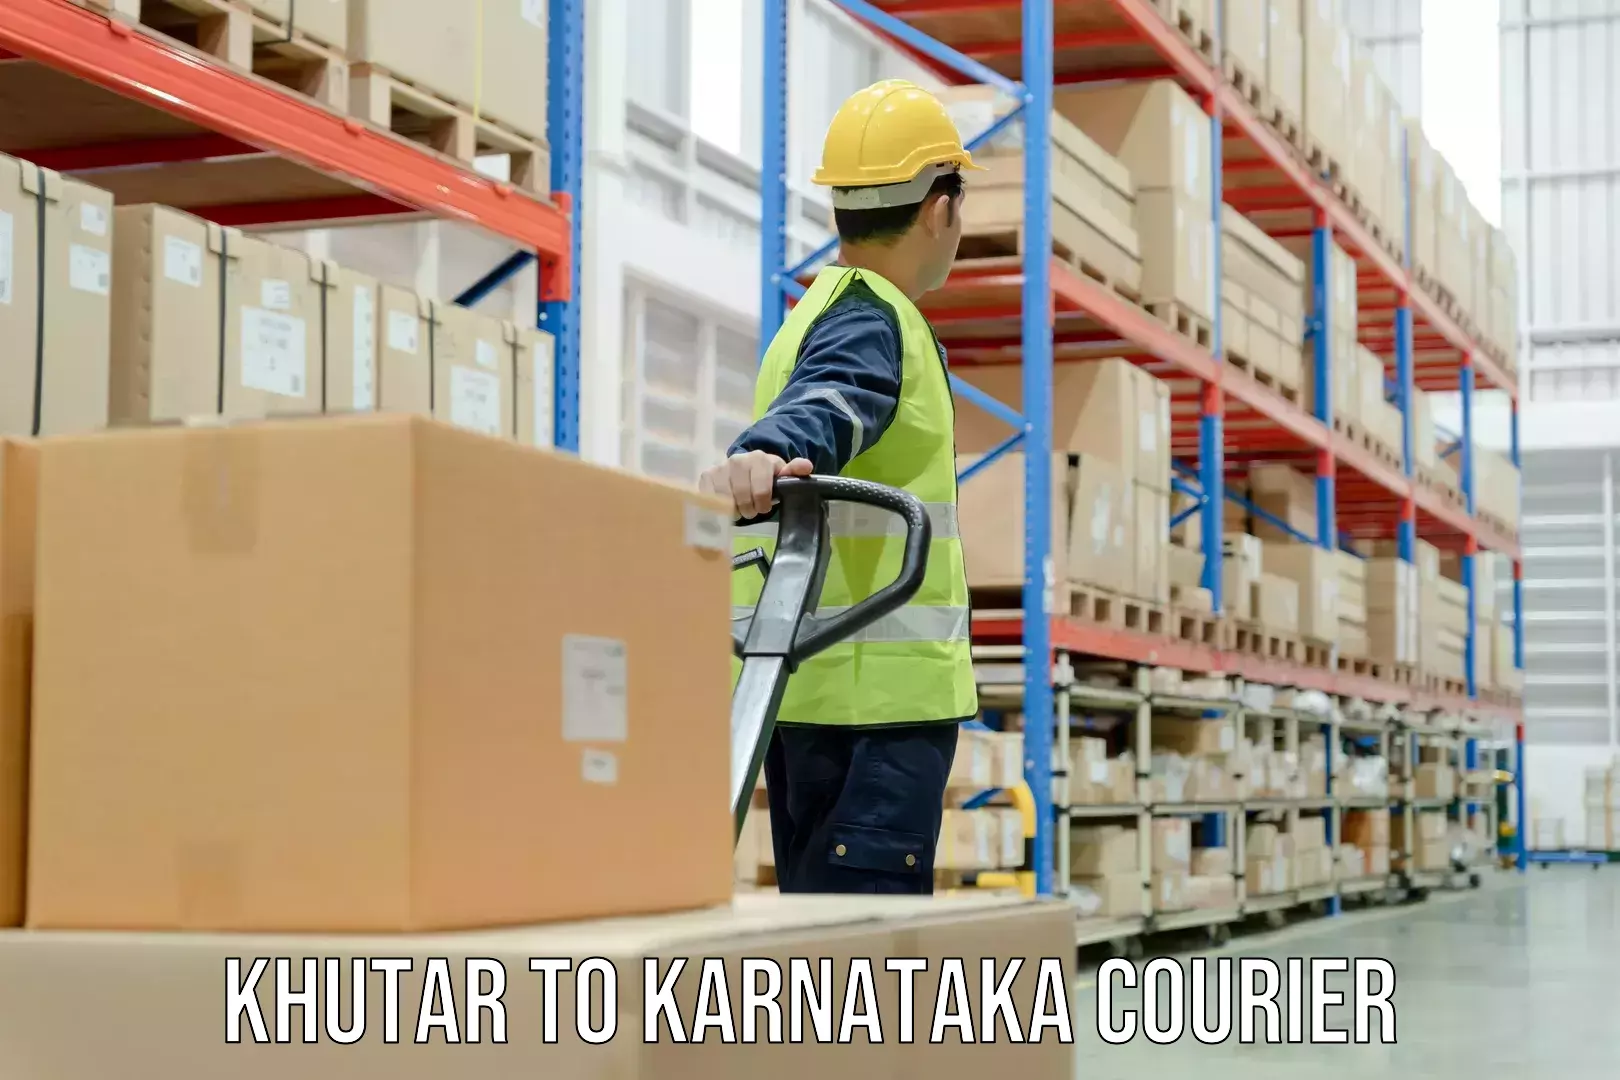 Efficient shipping platforms Khutar to Karnataka